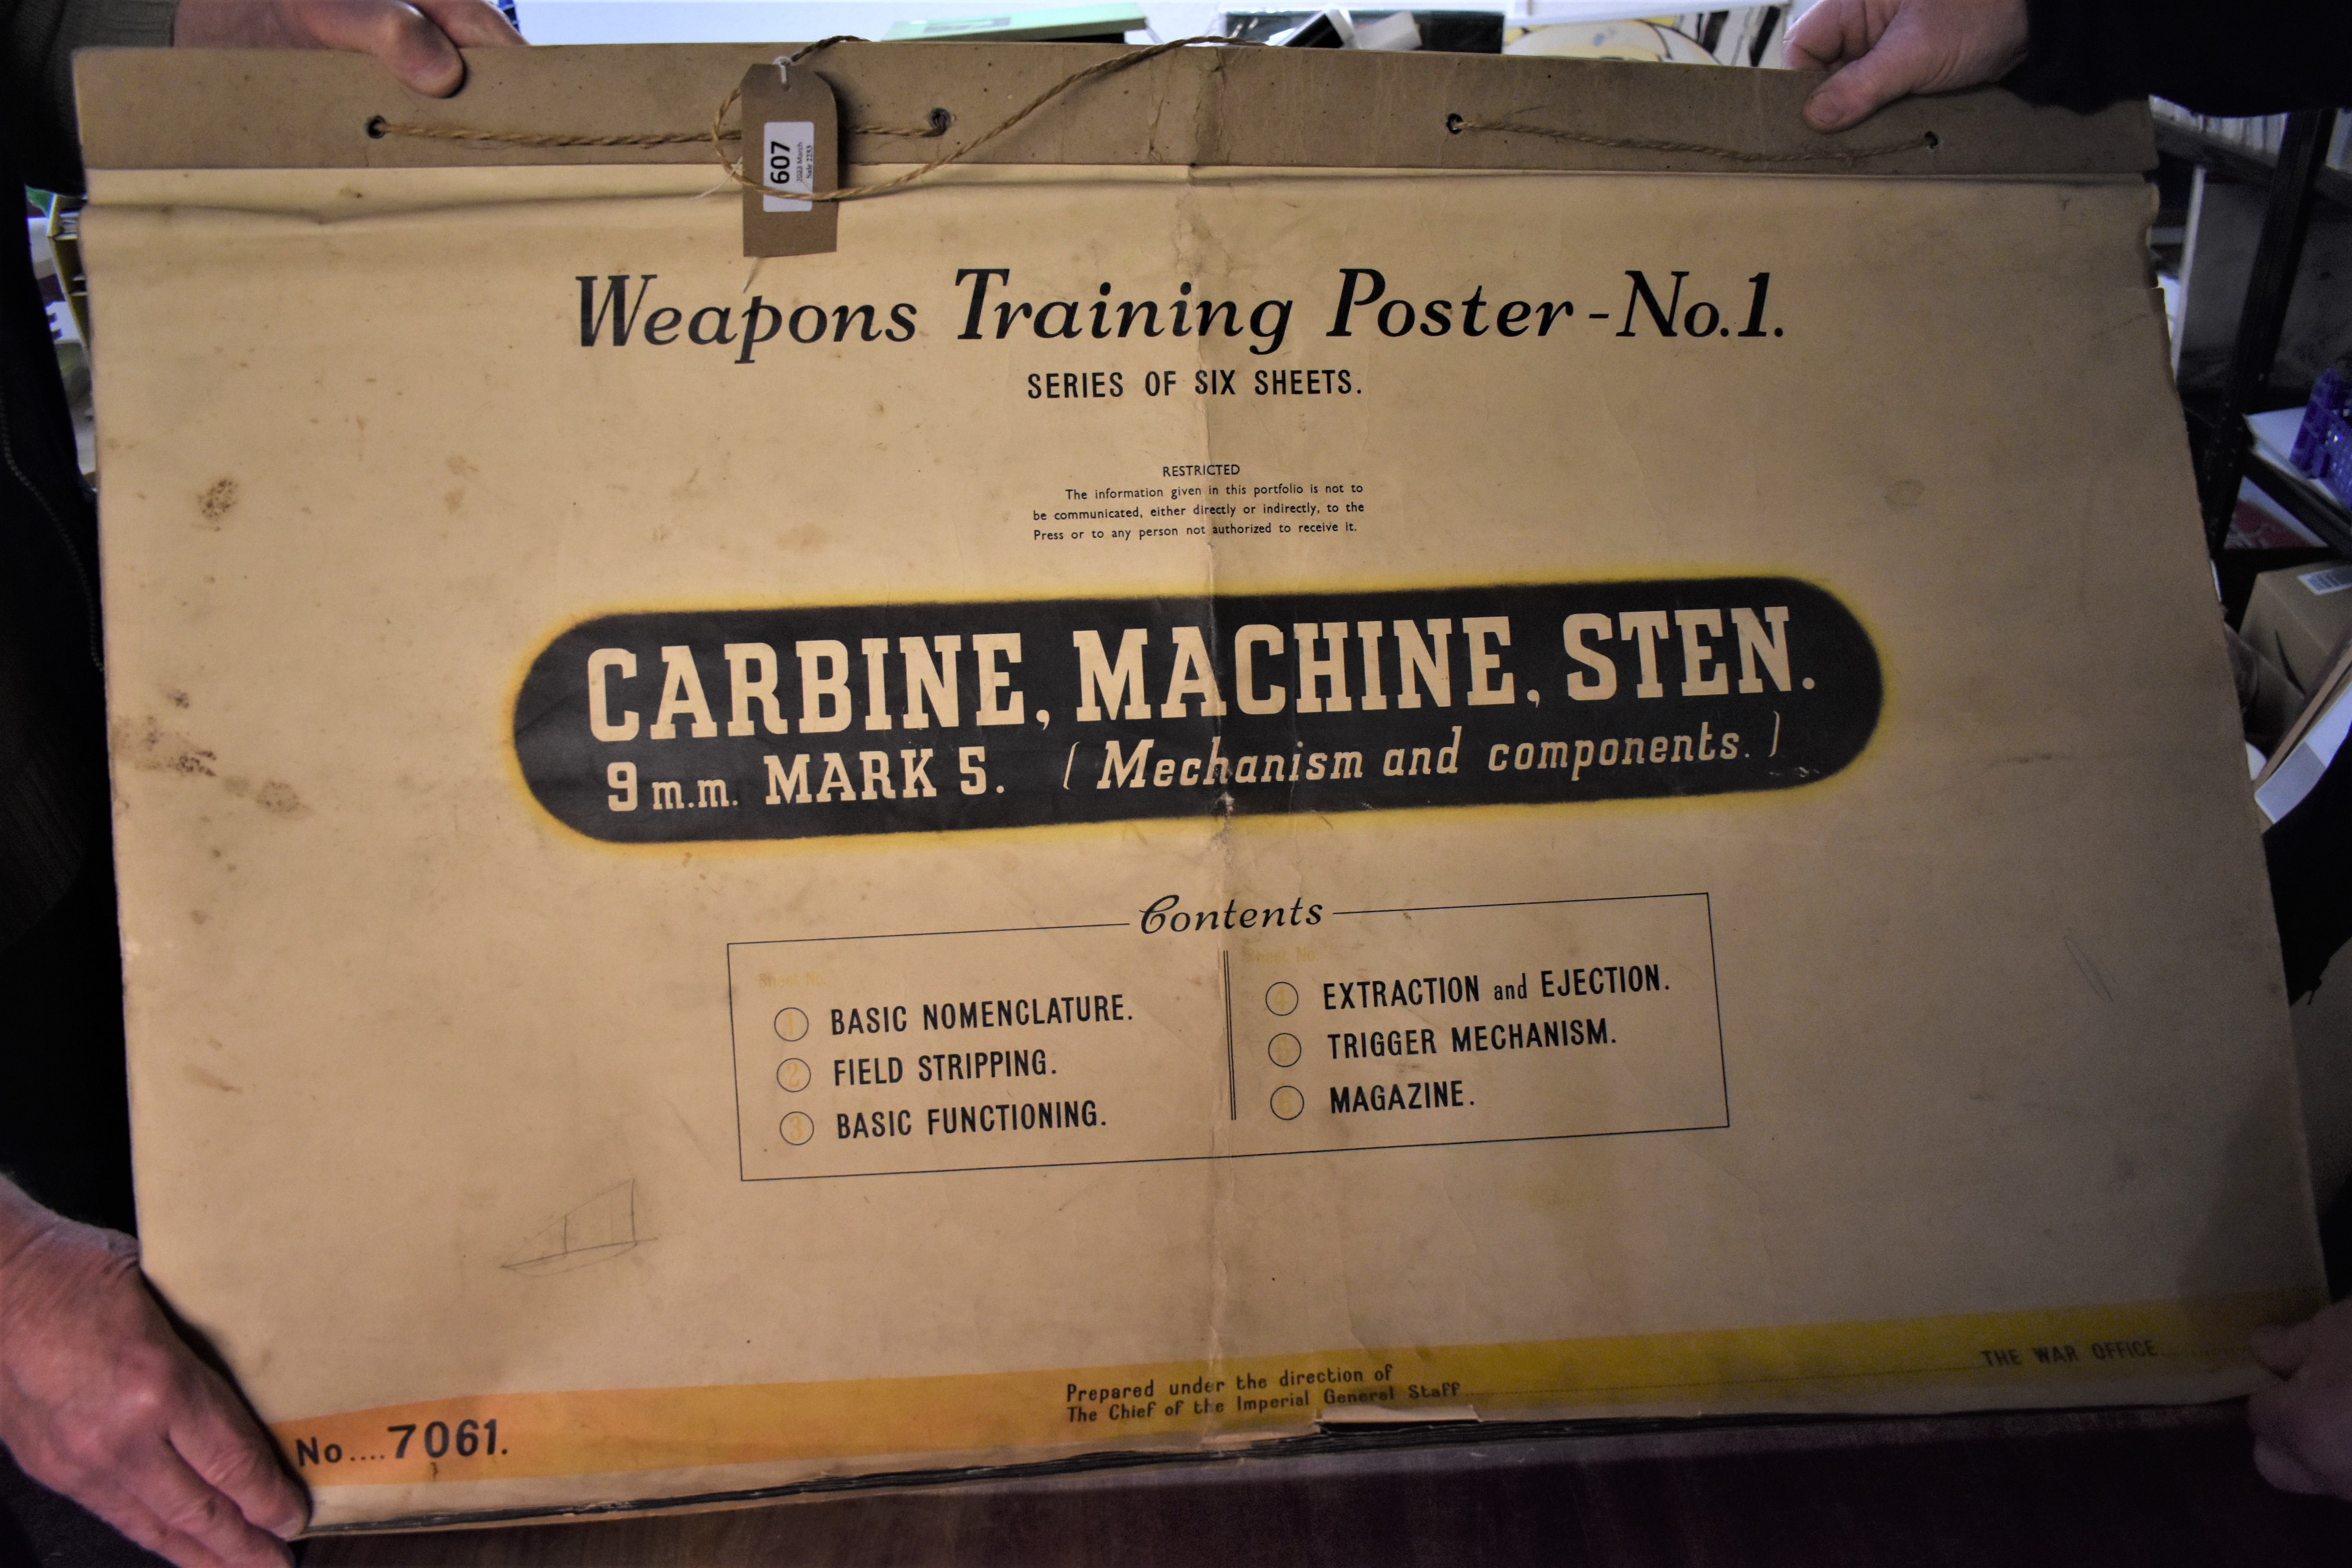 British 1946 dated Sten MK 5 Flip Chart, reads "Weapons training poster No.1 - Carbine, Machine, 9mm